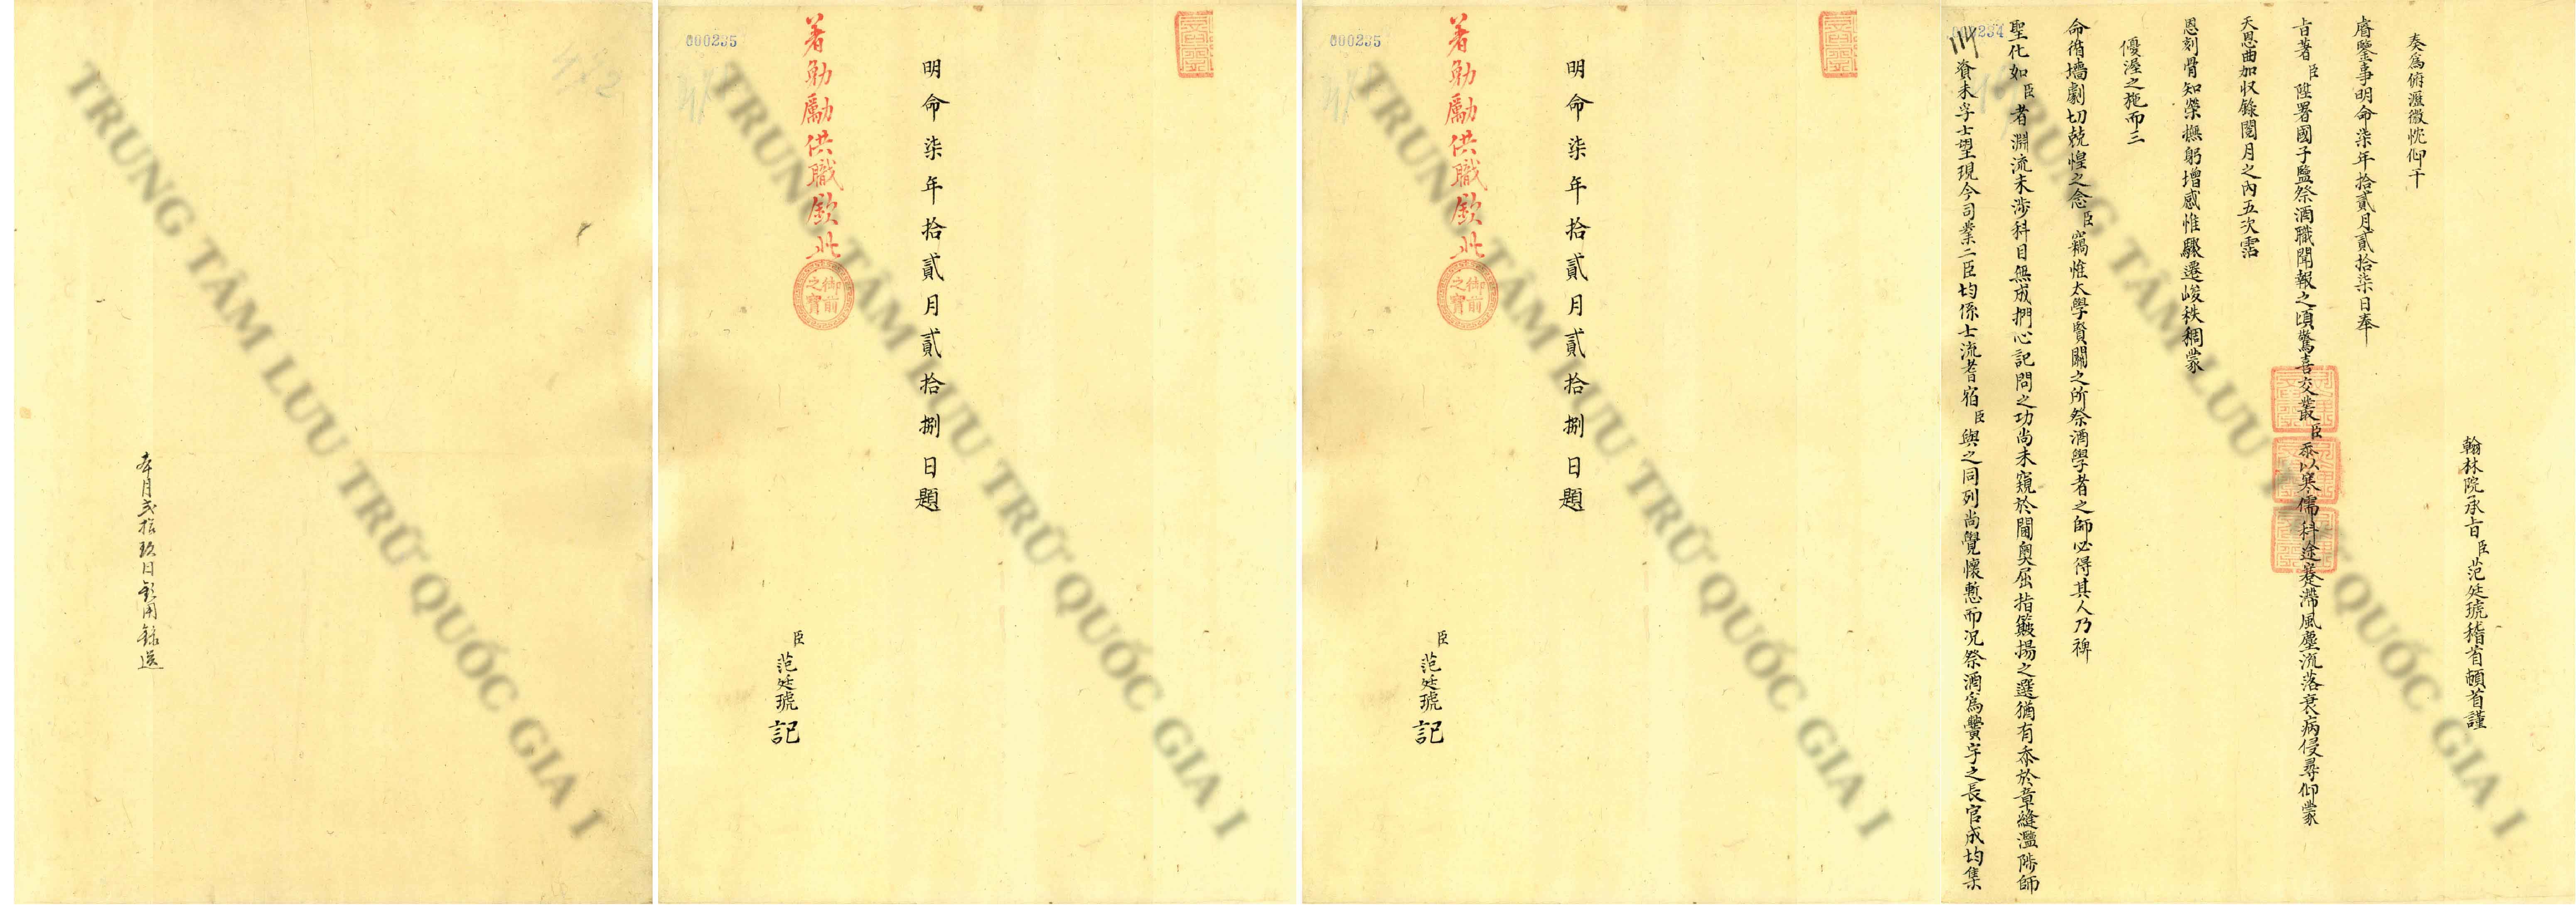 Giải mã bí mật đời sống văn chương chốn cung đình và các vụ án văn chương từ tài liệu gốc của các vua Nguyễn - 3